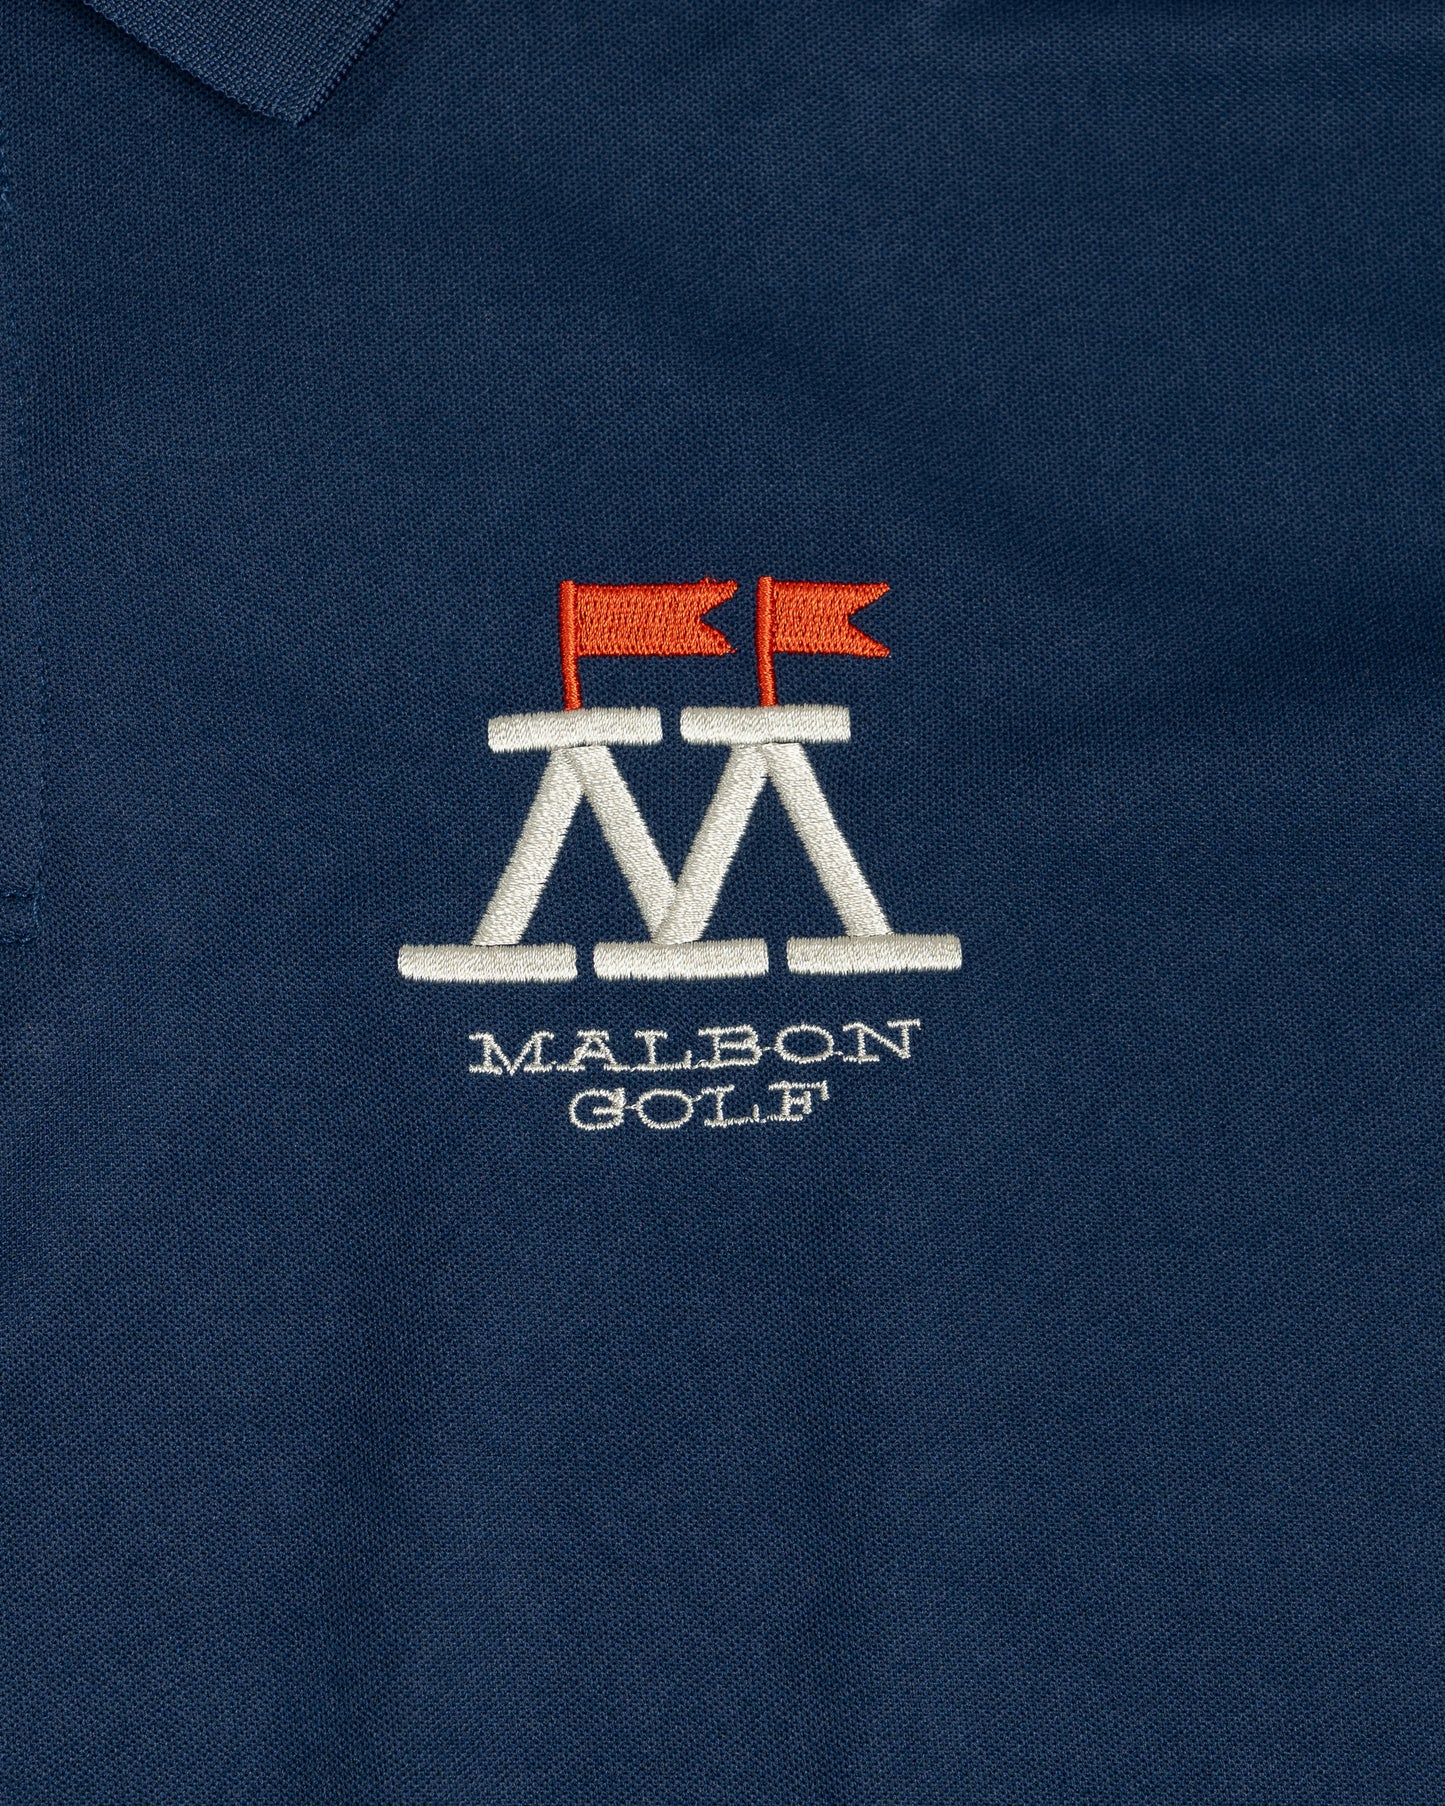 Malbon Golf Range Tested Performance Pique Polo Indigo